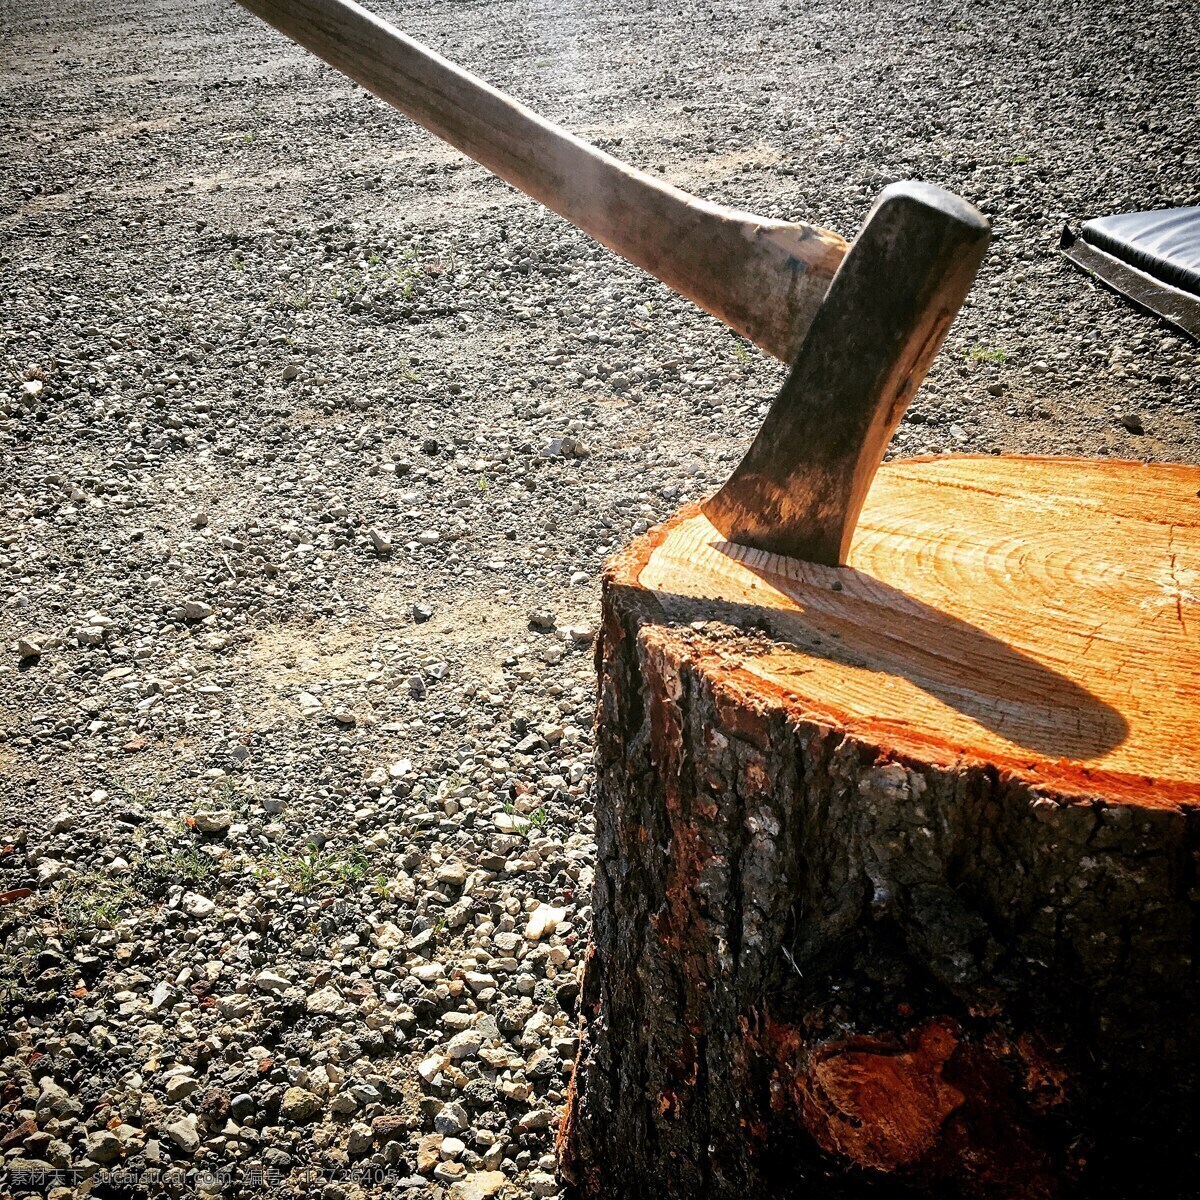 斧头 劈柴 利刃 铁器 工具 生活百科 生活素材